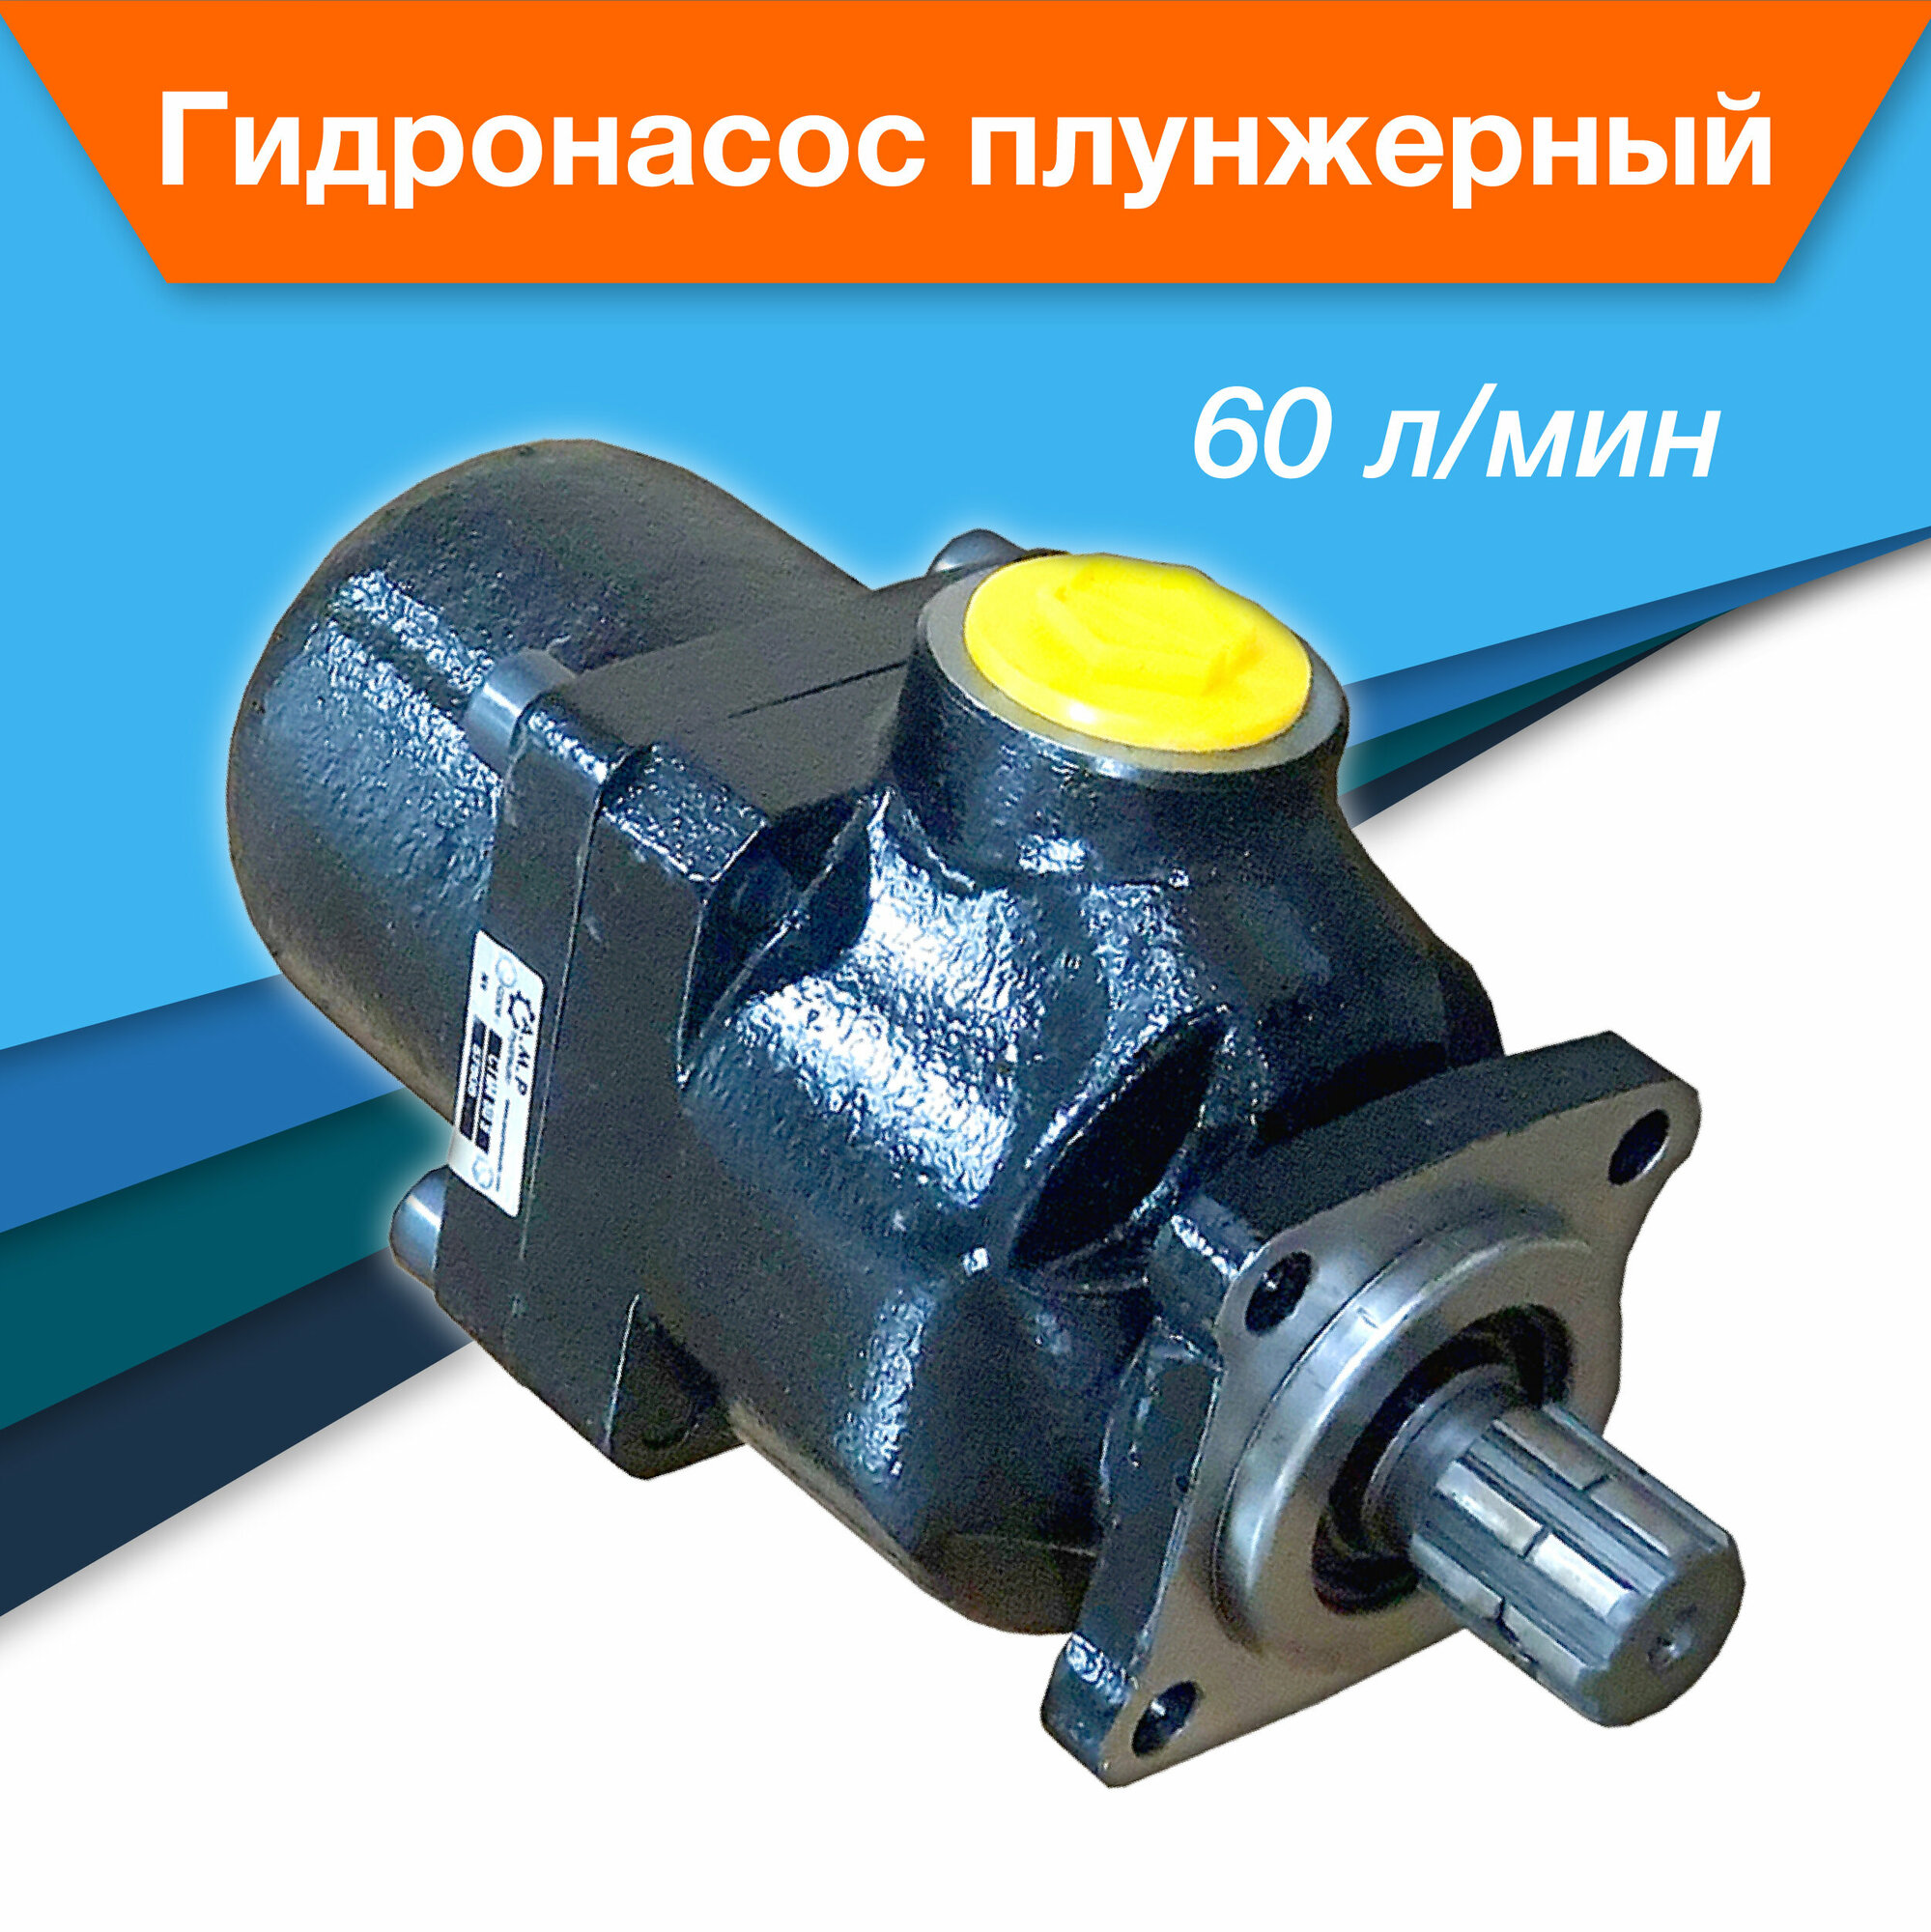 Гидронасос 60 л мин плунжерный прямой крепление ISO 7653 соответствует DIN 5462 гидравлический насос